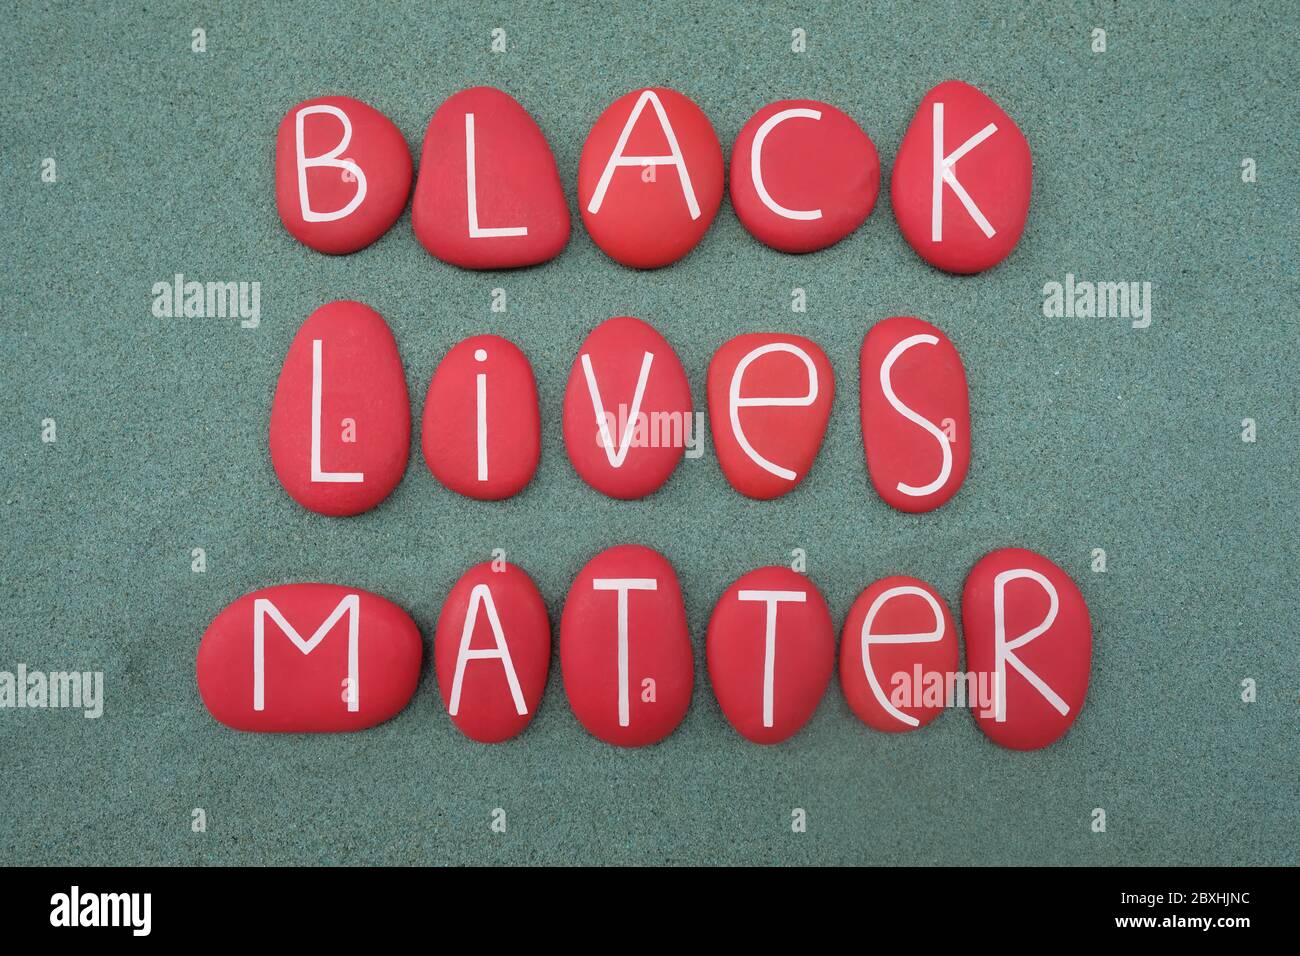 Schwarze Leben sind wichtig, Slogan und soziale Frage gegen Gewalt und systemischen Rassismus gegenüber schwarzen Menschen mit roten Steinbuchstaben komponiert Stockfoto